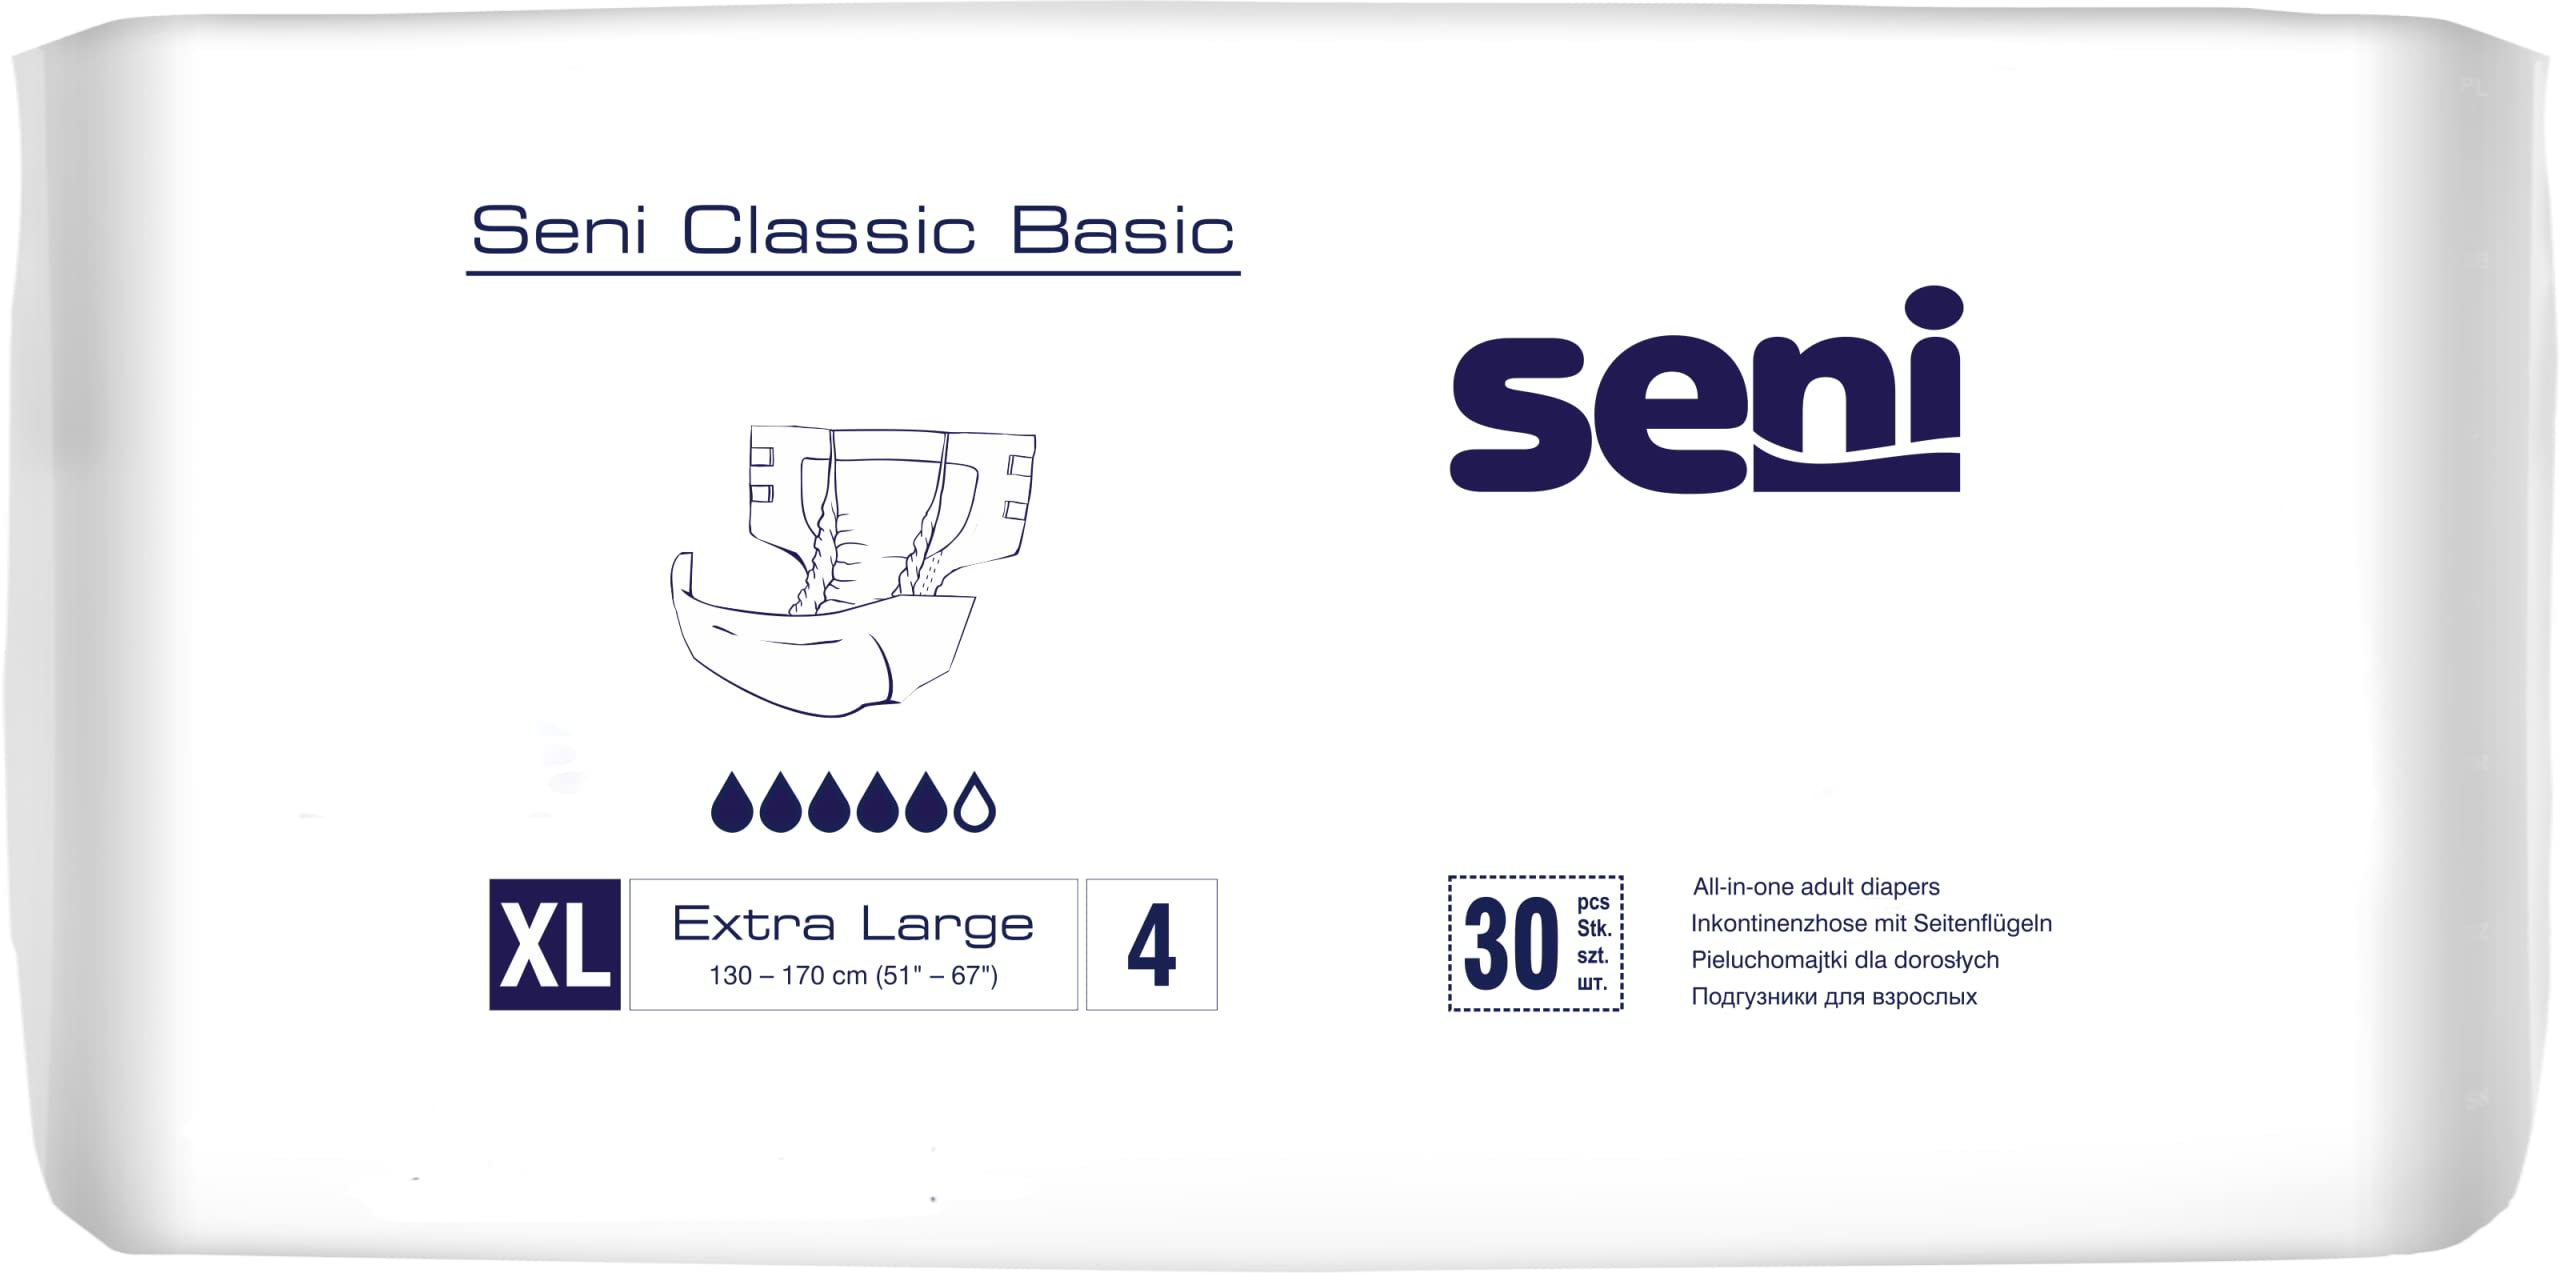 seni classic basic extra large a30 15703 2 16861422612942